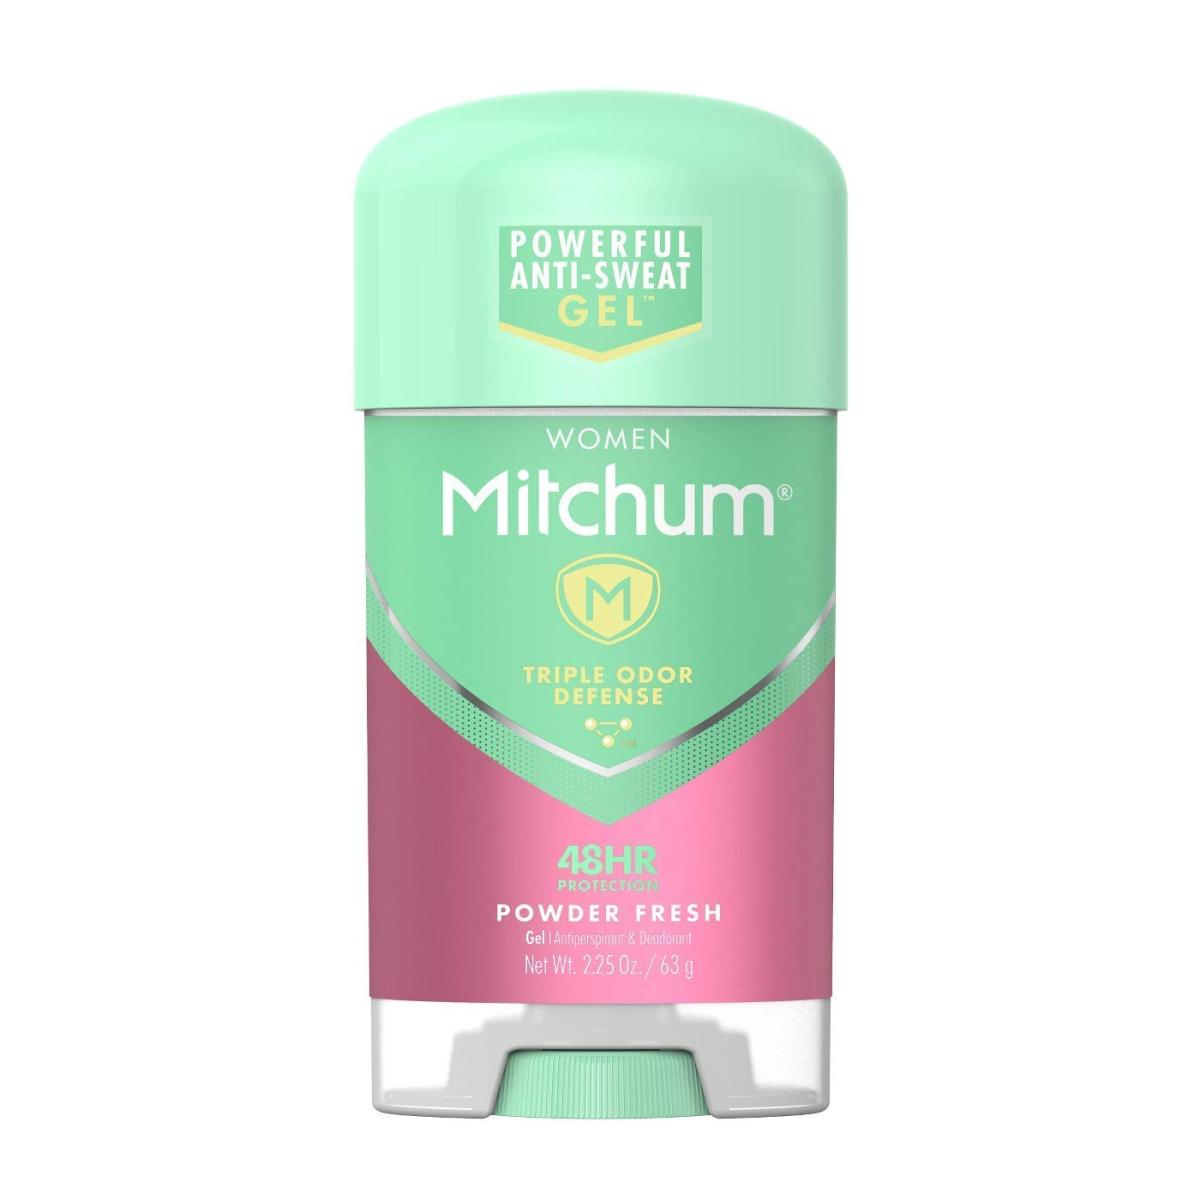 ژل شفاف ضد تعریق زنانه Powder Fresh - mitchum powder deodorant gel